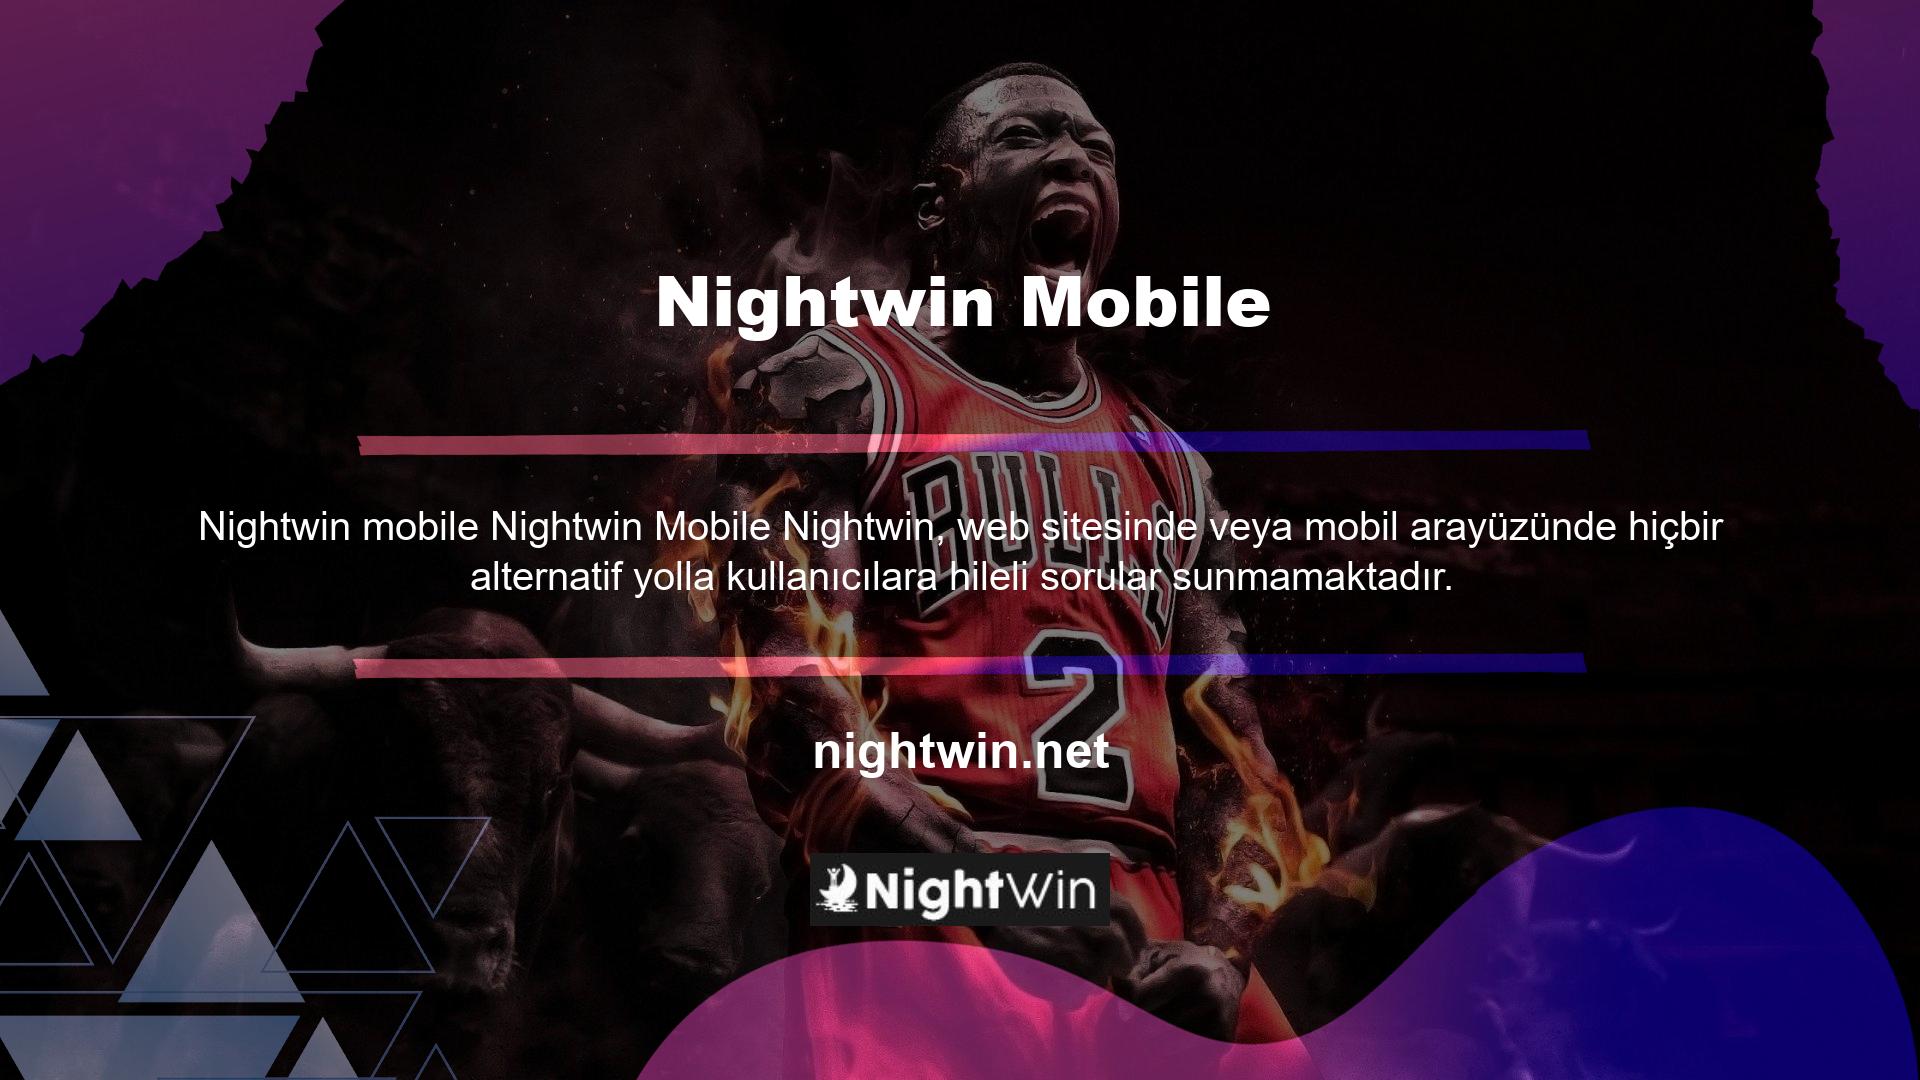 Nightwin, mobil dolandırıcılık gibi durumların önüne geçmek için sitedeki tüm alternatif oyunları izlemektedir